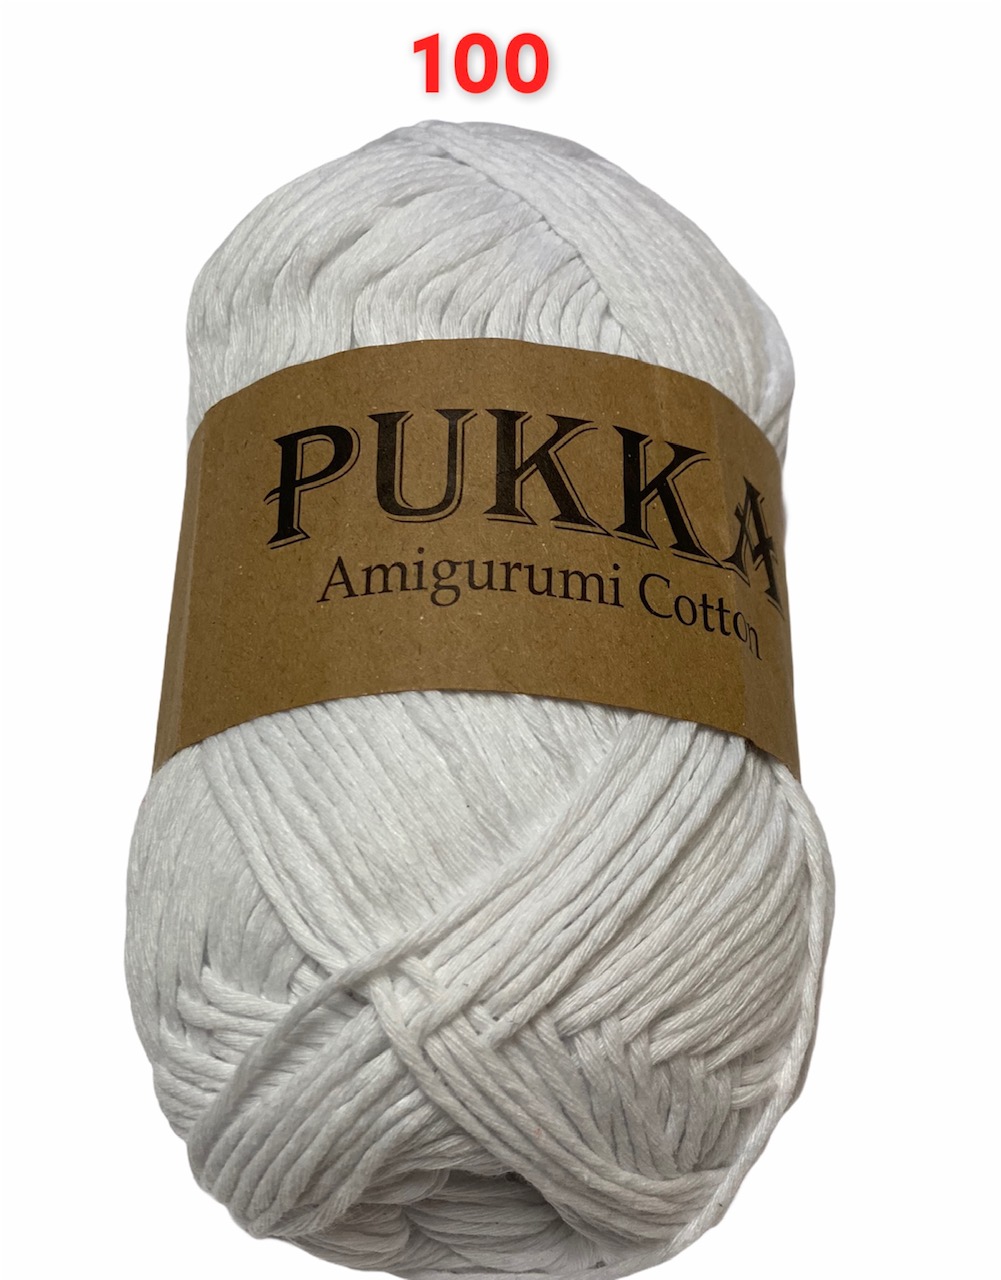 PUKKA Amigurumi Cotton 100g,100